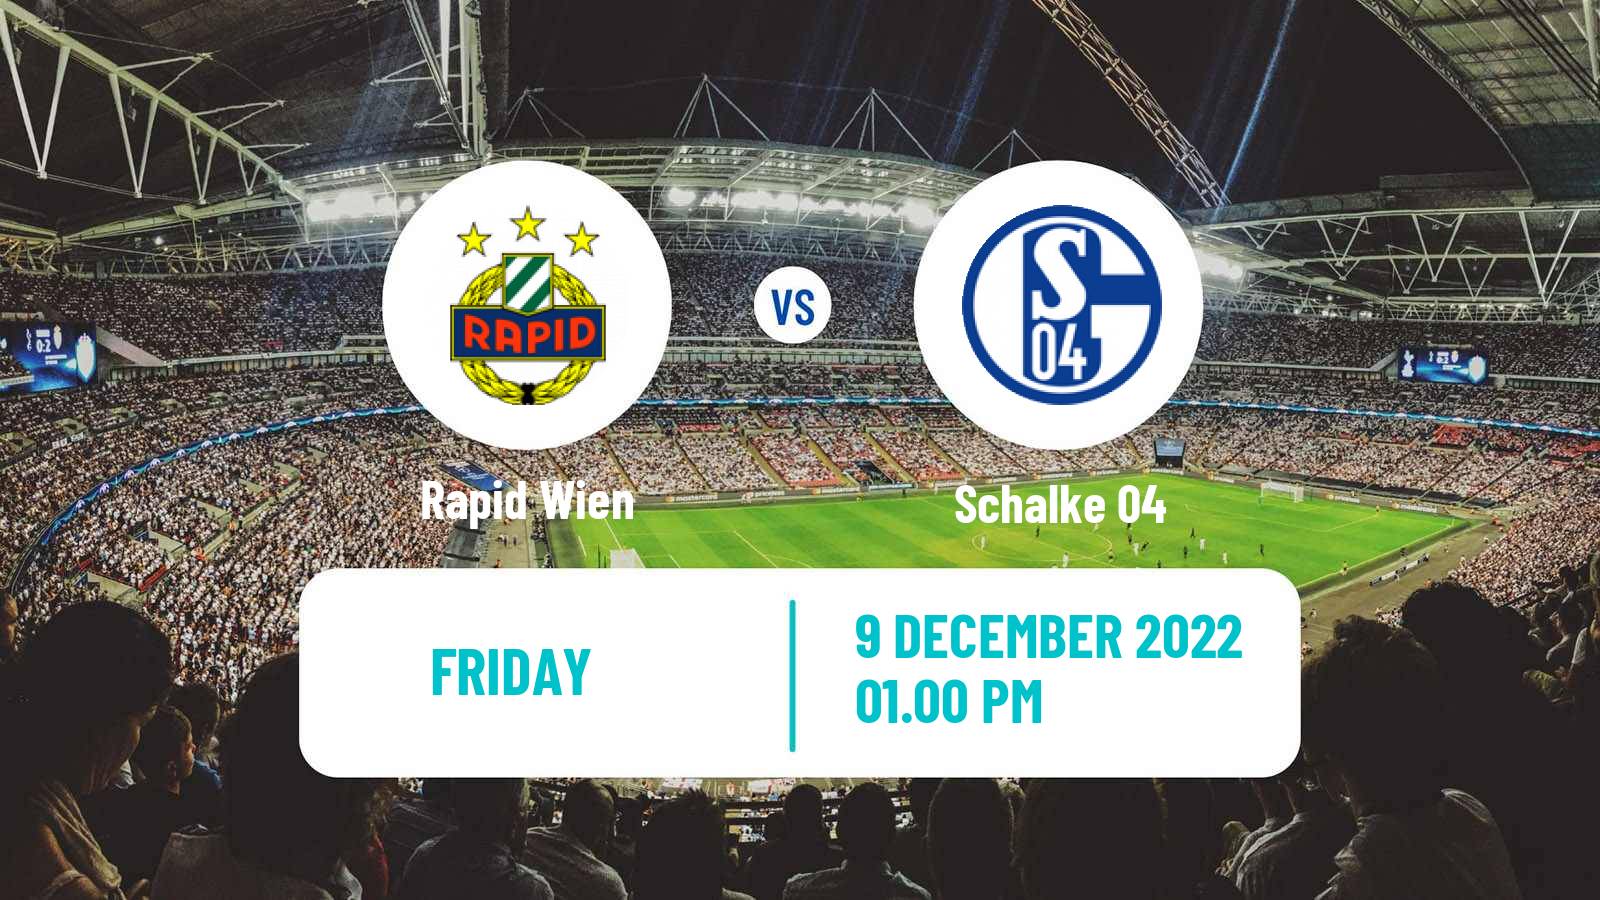 Soccer Club Friendly Rapid Wien - Schalke 04